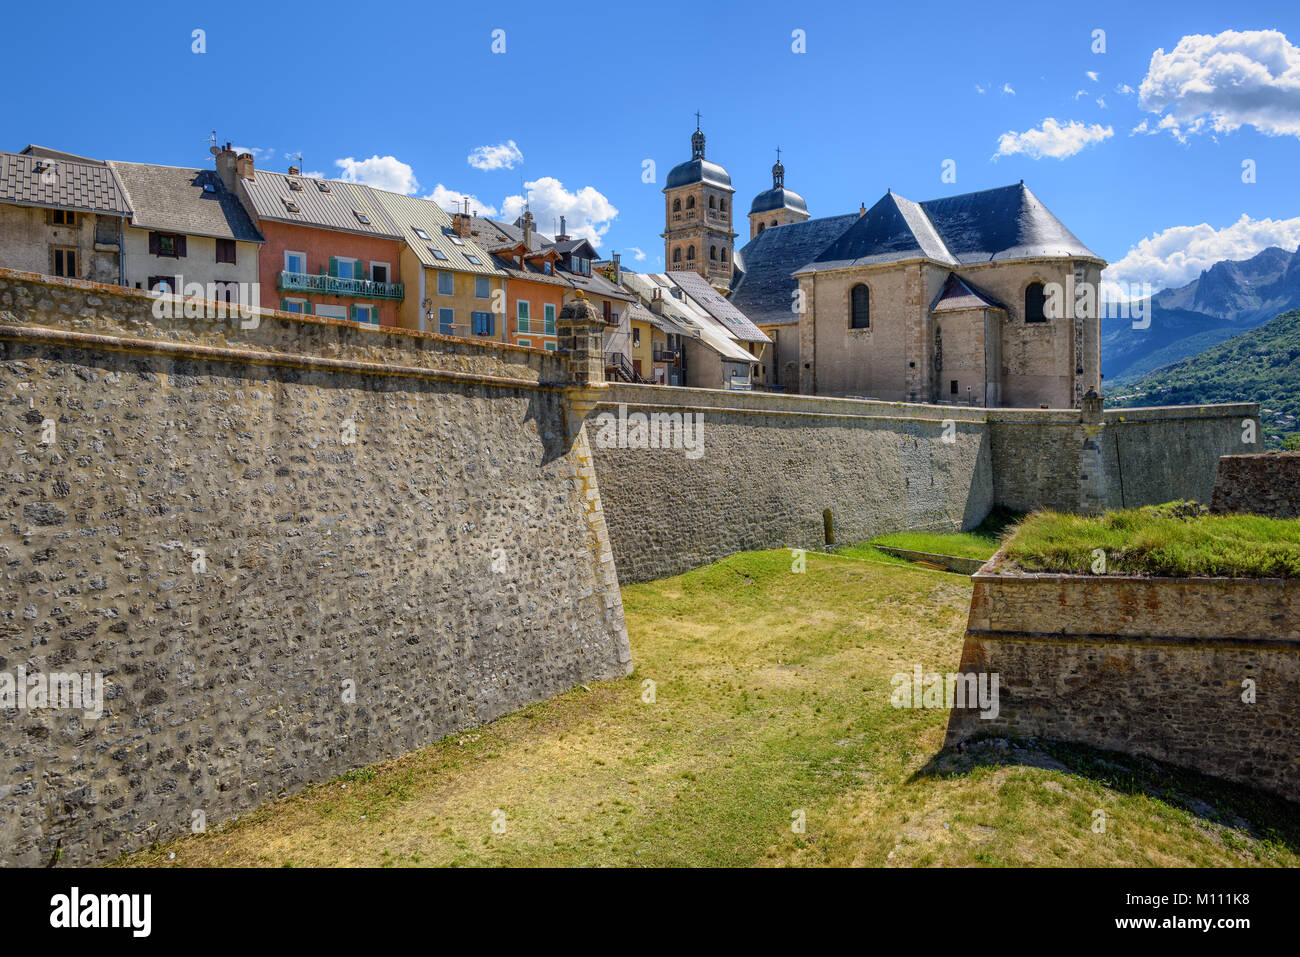 Les Remparts de la vieille ville de Briançon, Vauban, Patrimoine Mondial de l'Unesco sont site. Briançon est la plus haute ville de France. Banque D'Images